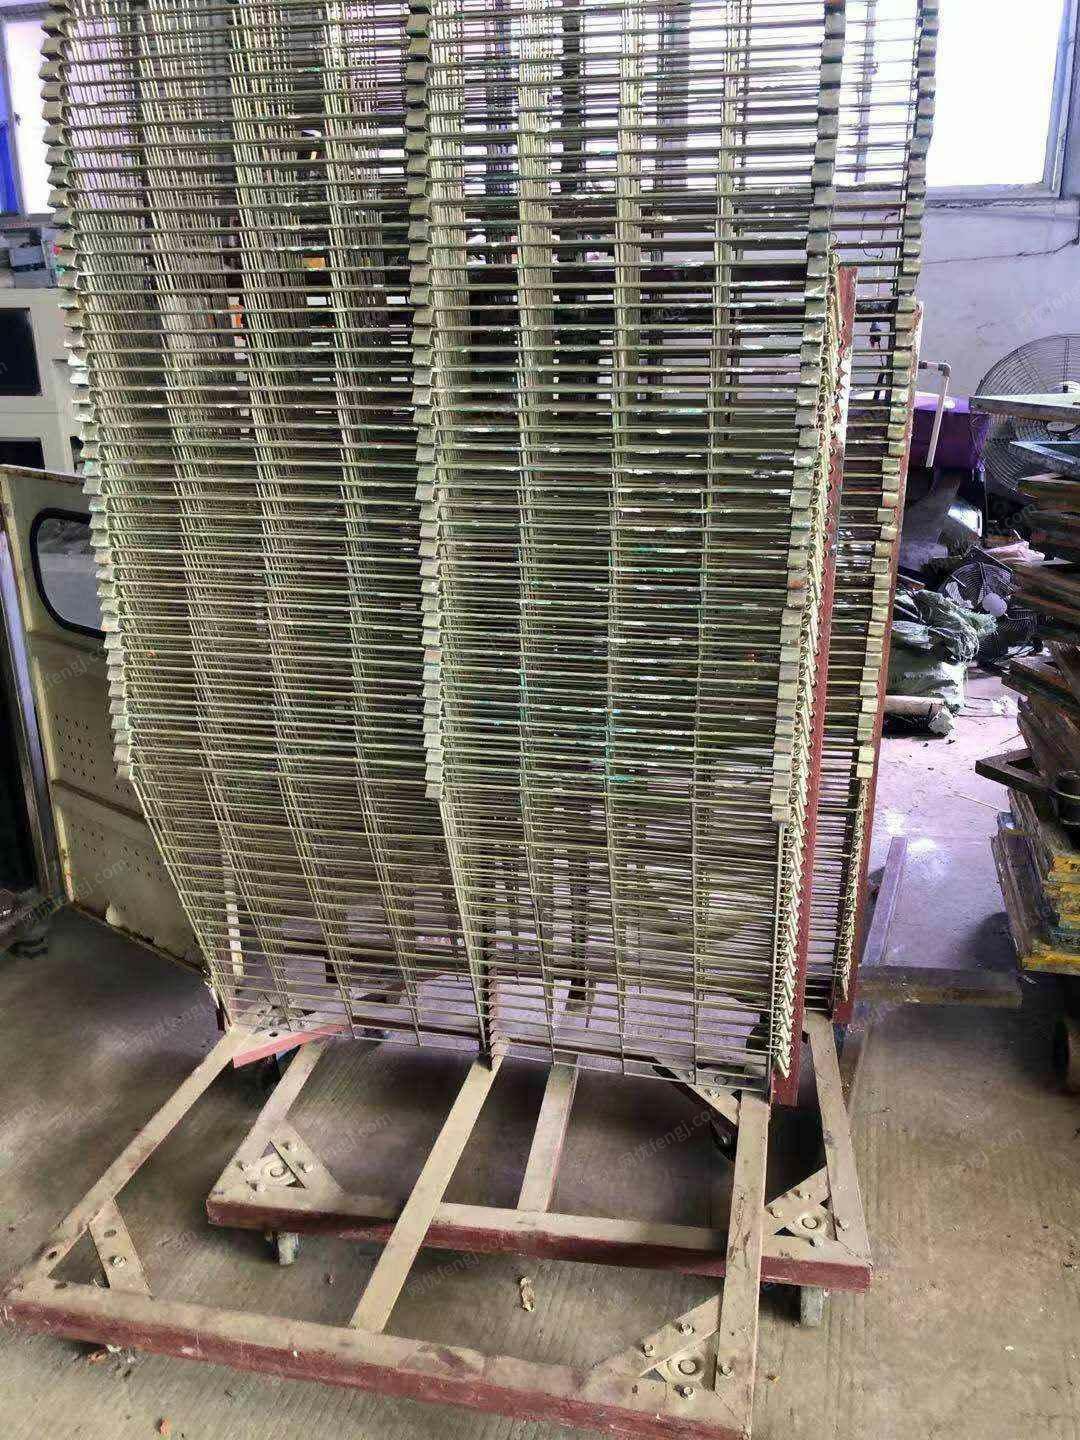 旧印刷机辅助器材回收